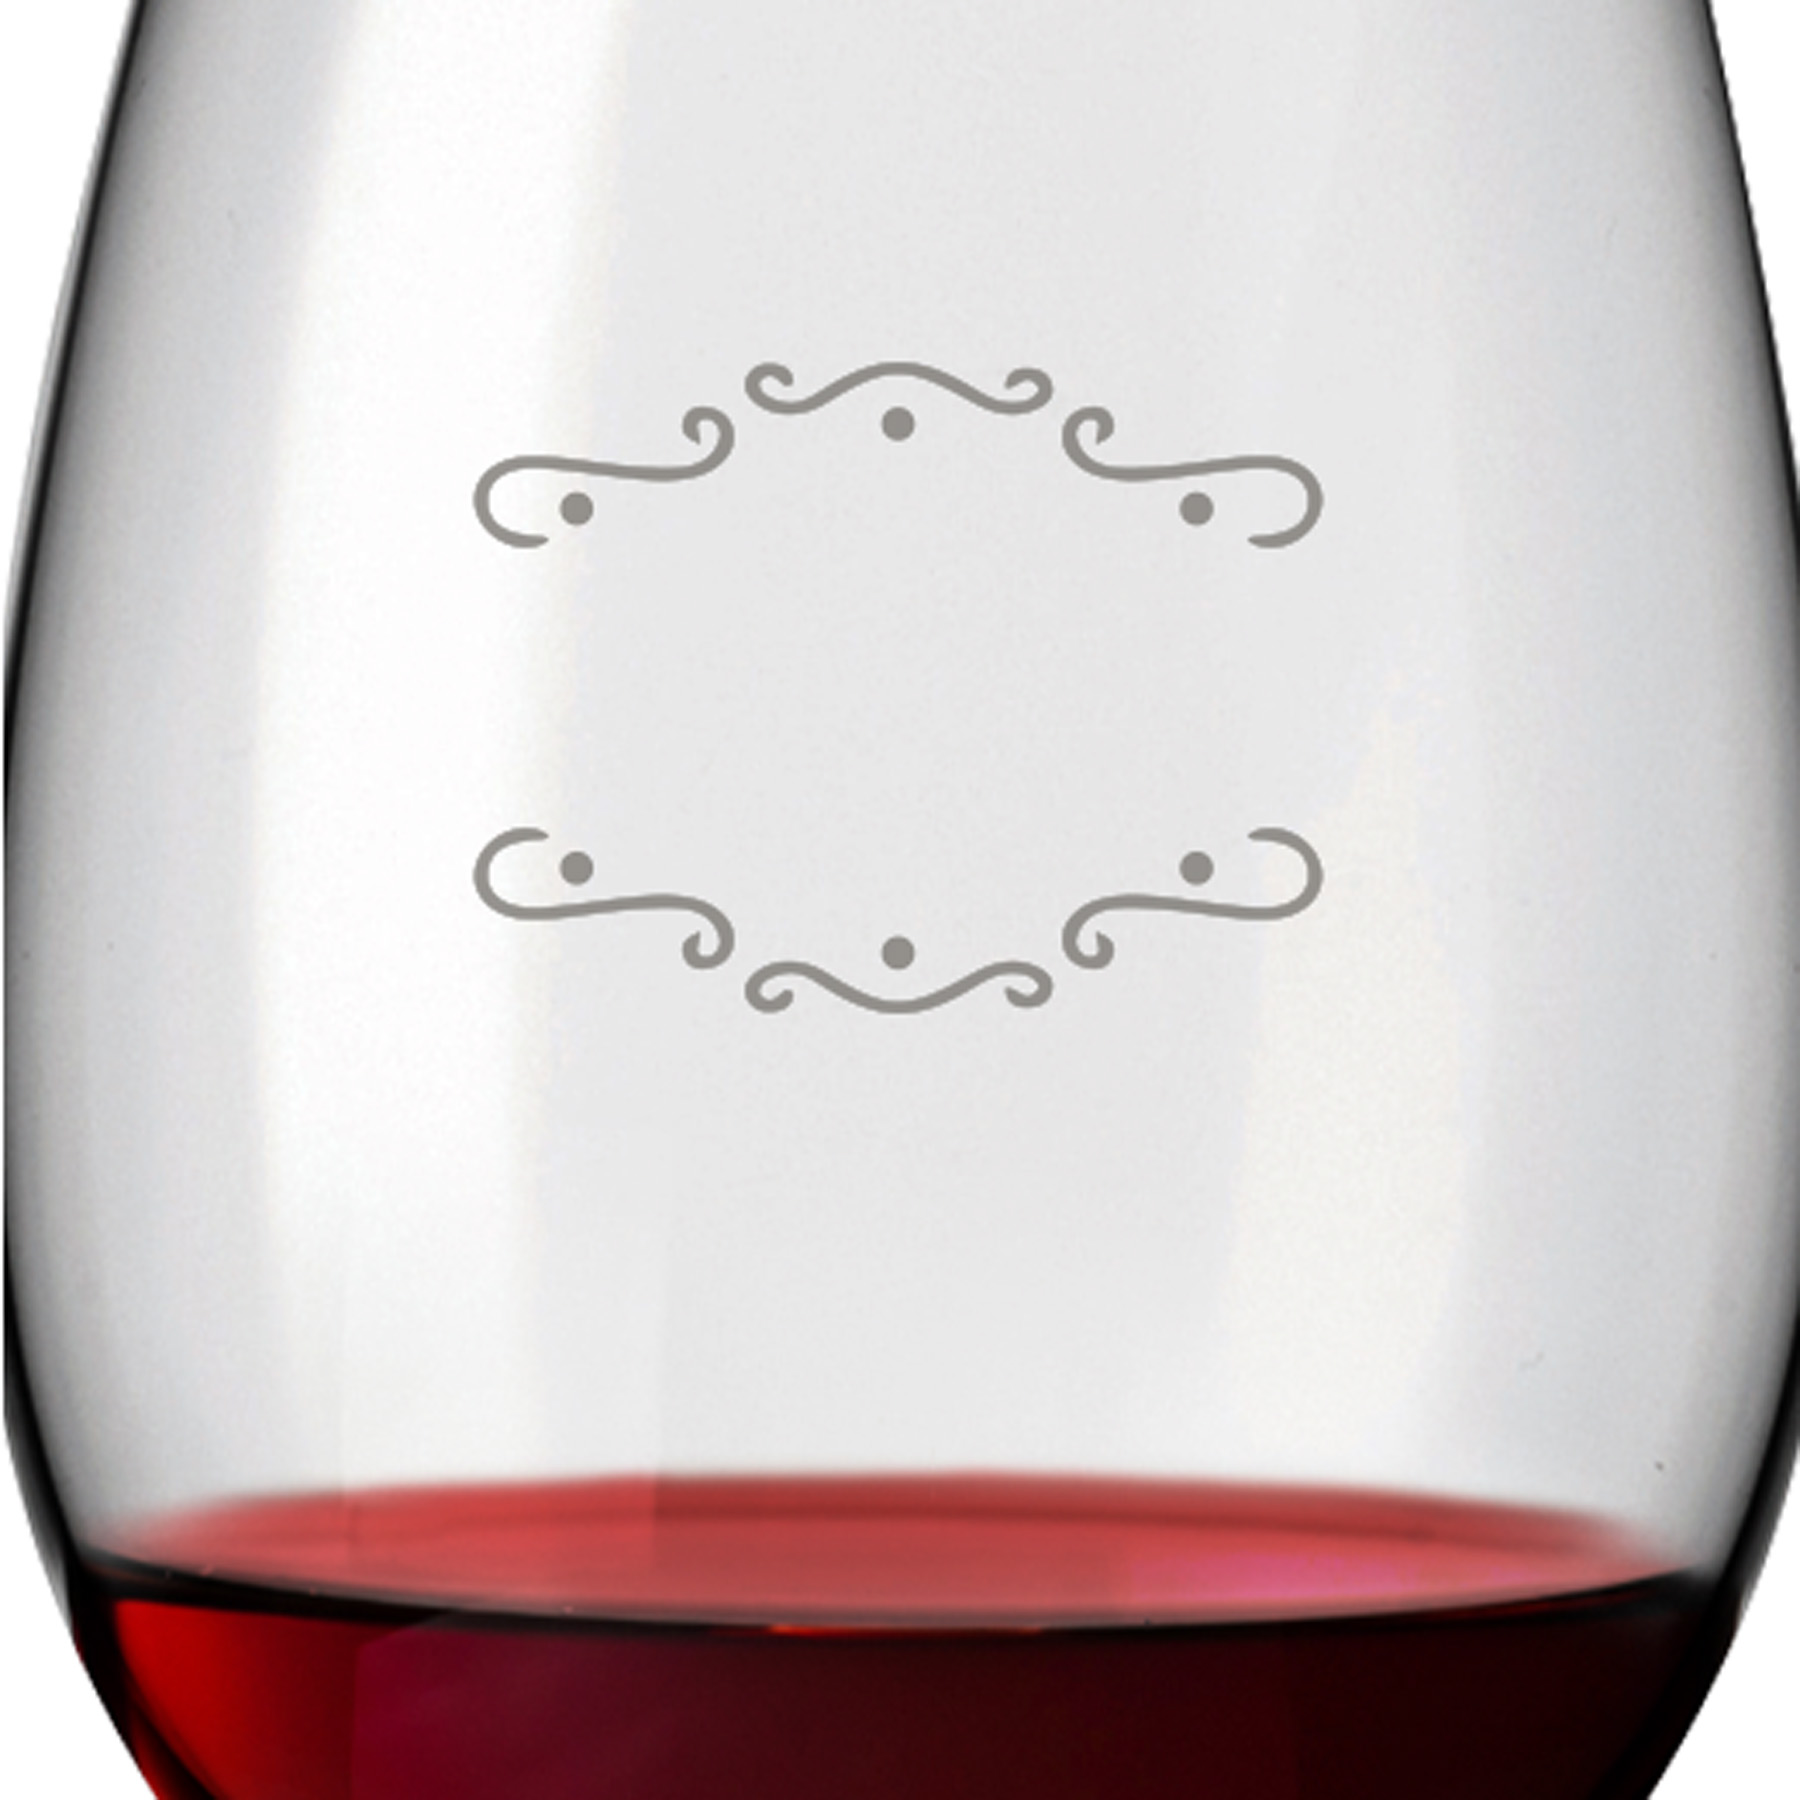 2x Leonardo Rotweinglas mit Namen oder Wunschtext graviert, 460ml, DAILY, personalisiertes Premium Rotweinglas in Gastroqualität (Verzierung 02)